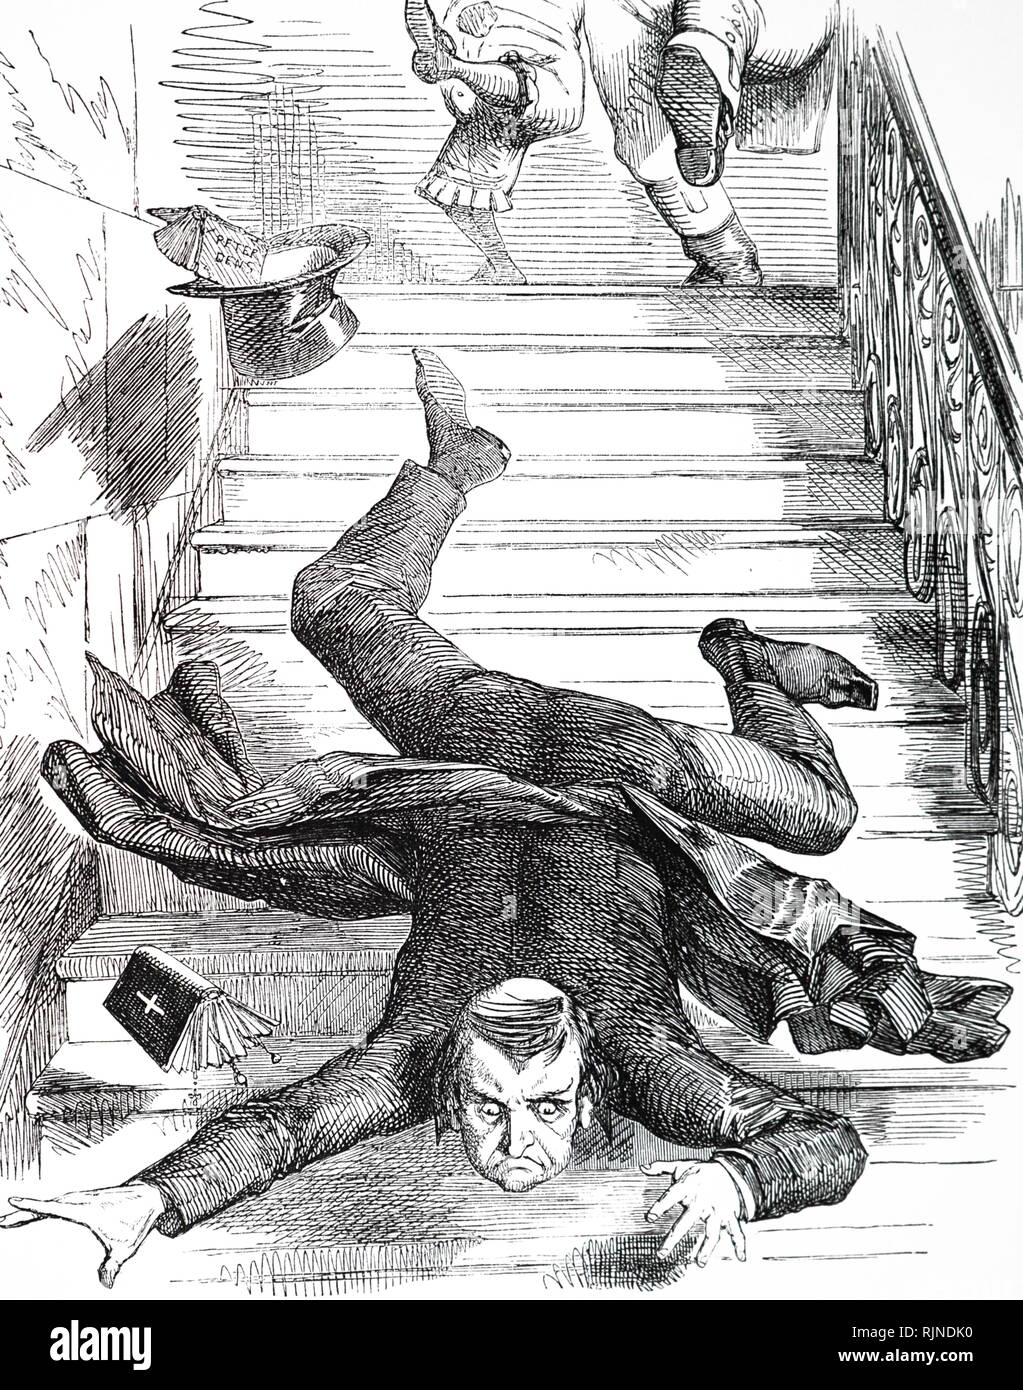 Une caricature représentant Edward Bouverie Pusey à coups de pieds dans les escaliers par John Bull et M. Punch. Edward Bouverie Pusey (1800-1882) leader du mouvement d'Oxford et ritualisme dans l'Église d'Angleterre. En date du 19e siècle Banque D'Images